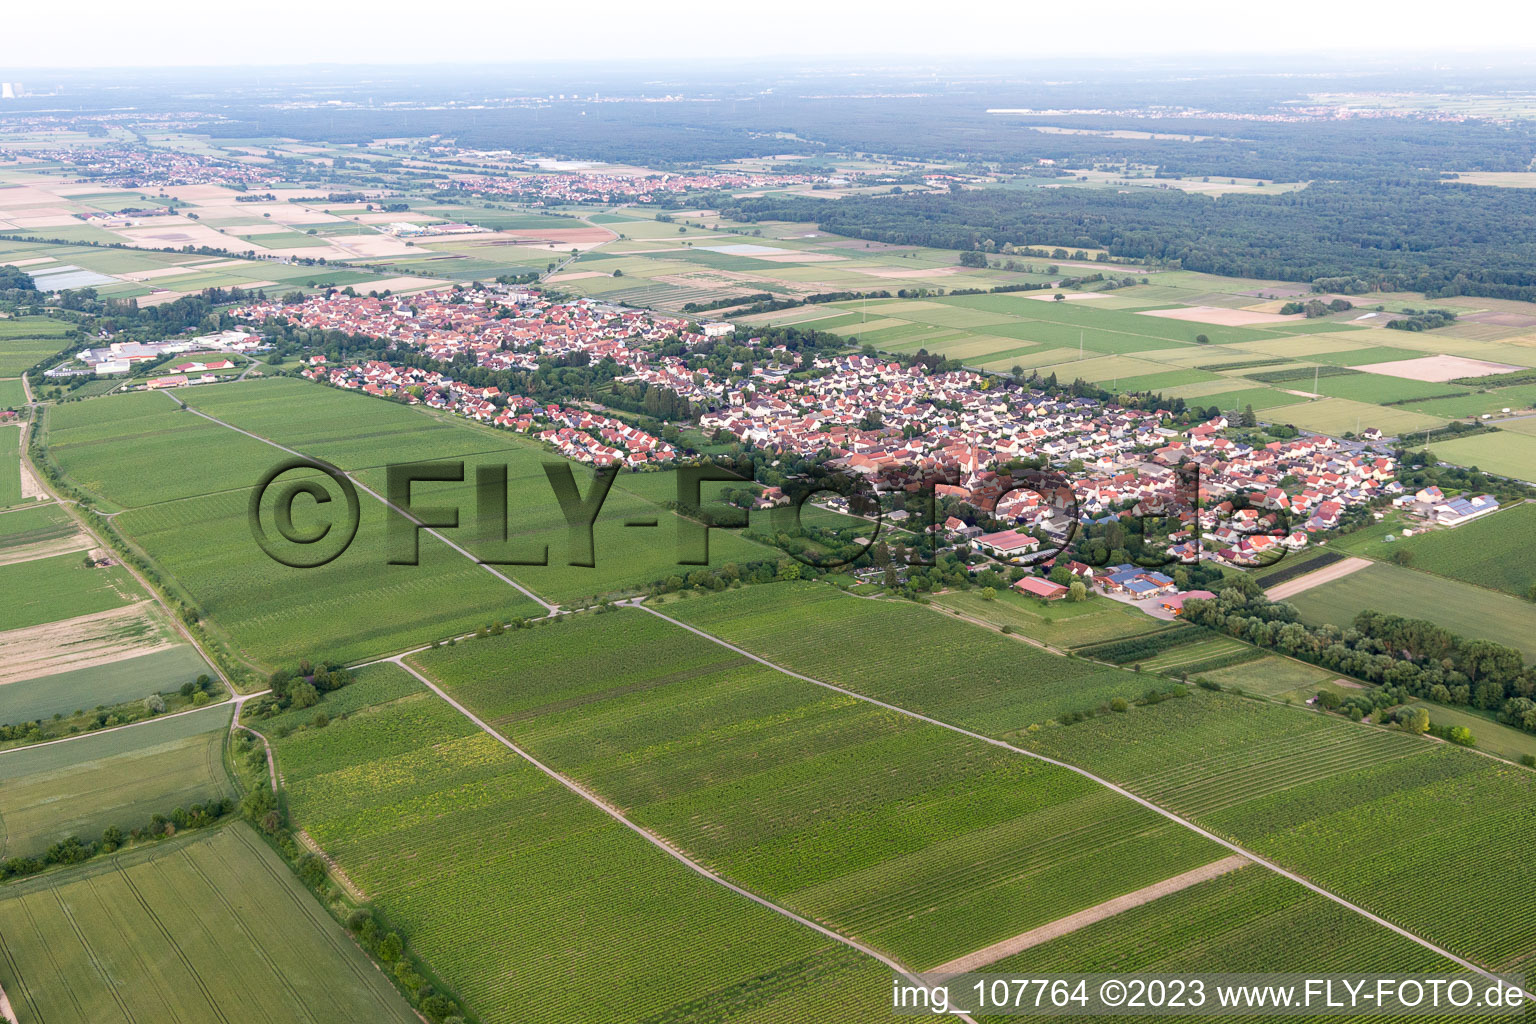 Essingen im Bundesland Rheinland-Pfalz, Deutschland aus der Drohnenperspektive